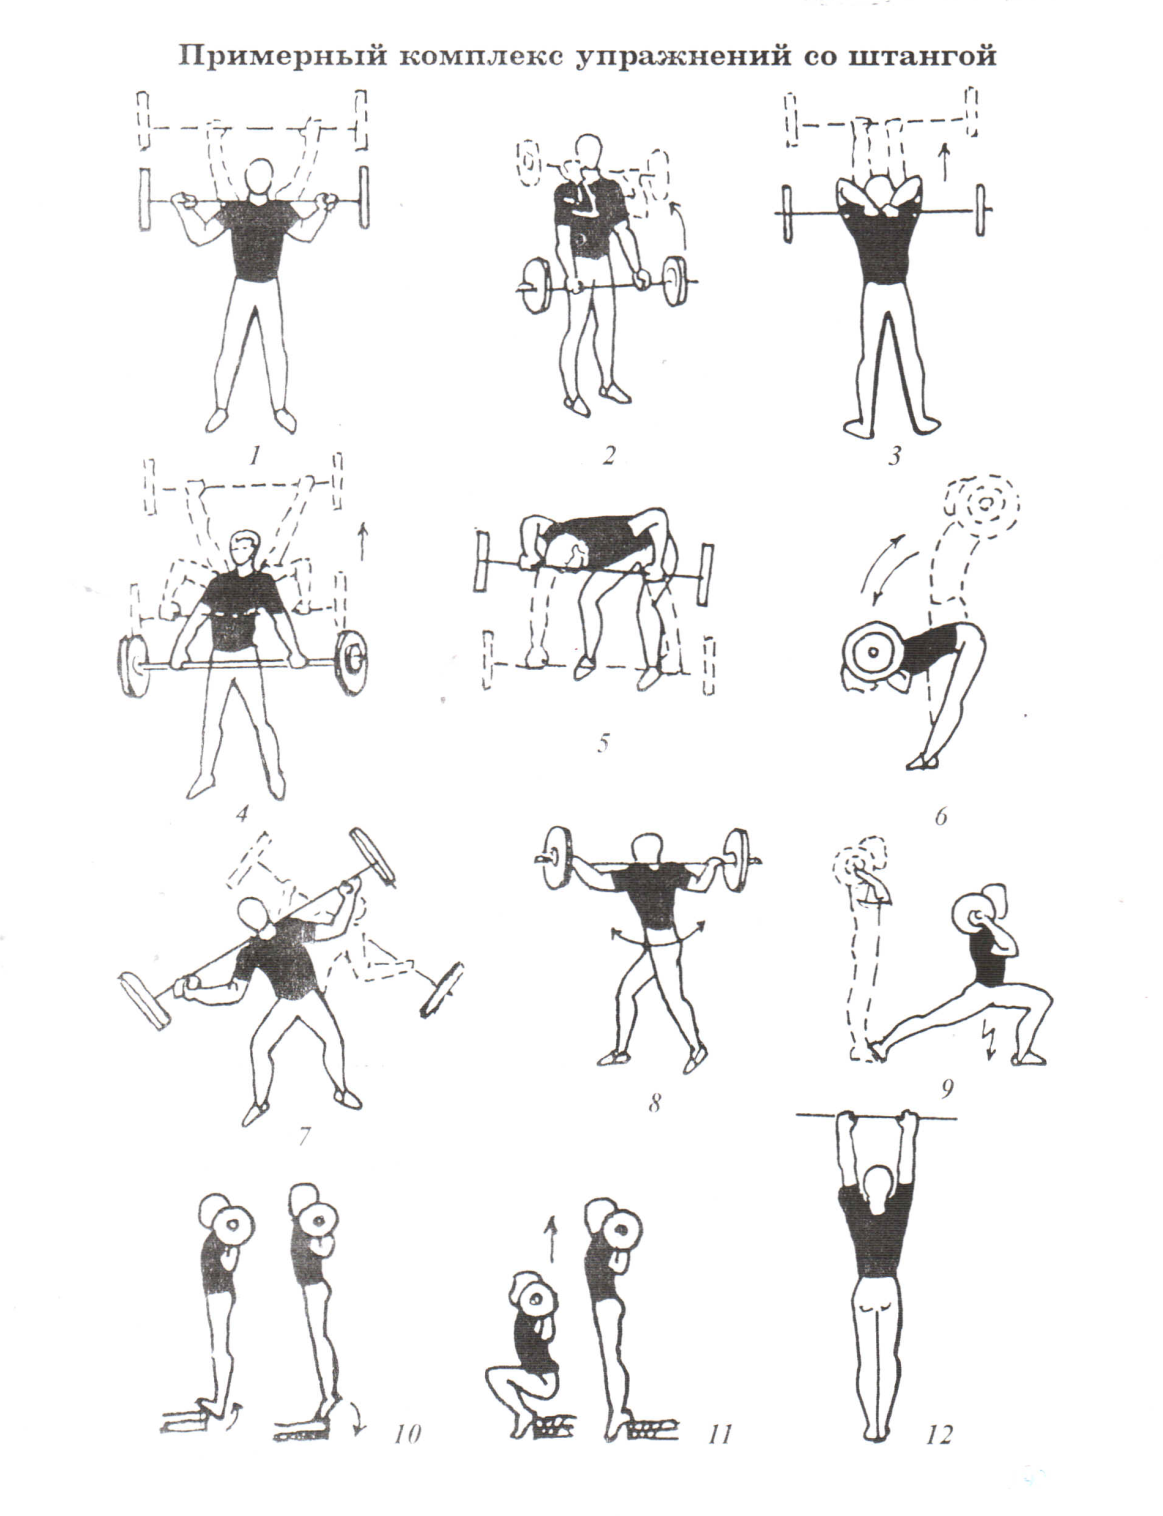 Упражнения с гантелями для женщин: подборка эффективных упражнений на каждую группу мышц с техникой выполнения